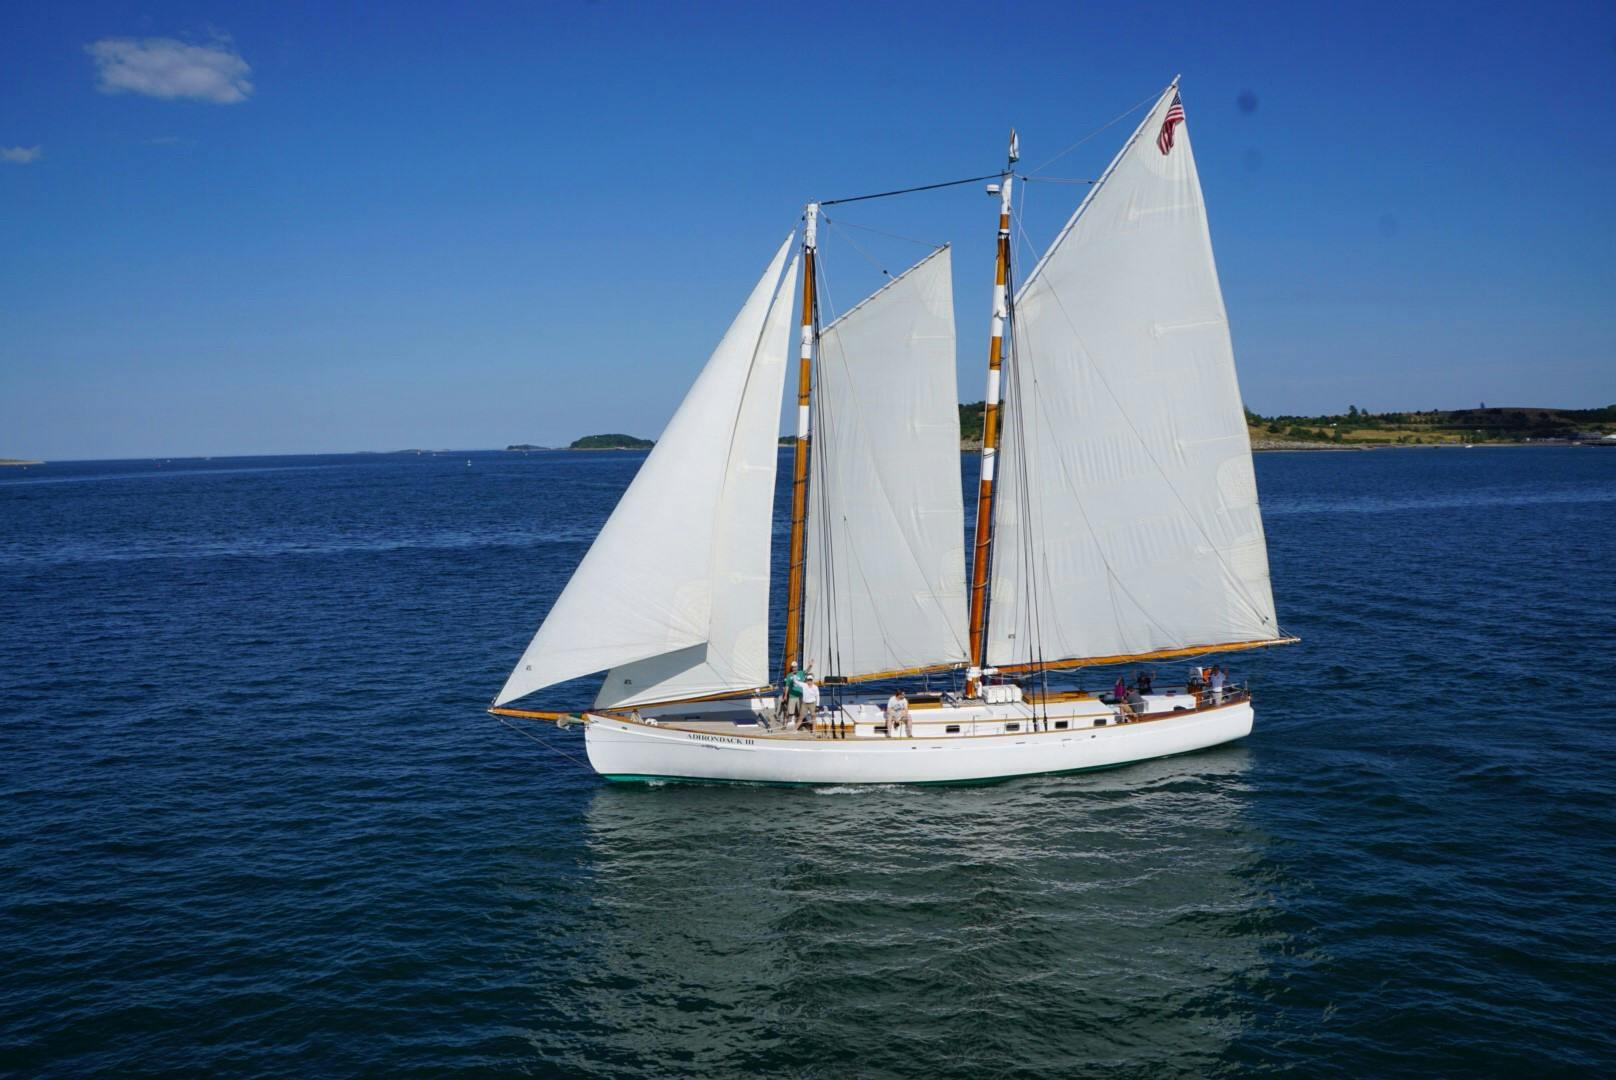 Day sail on Adirondack III in Boston Musement